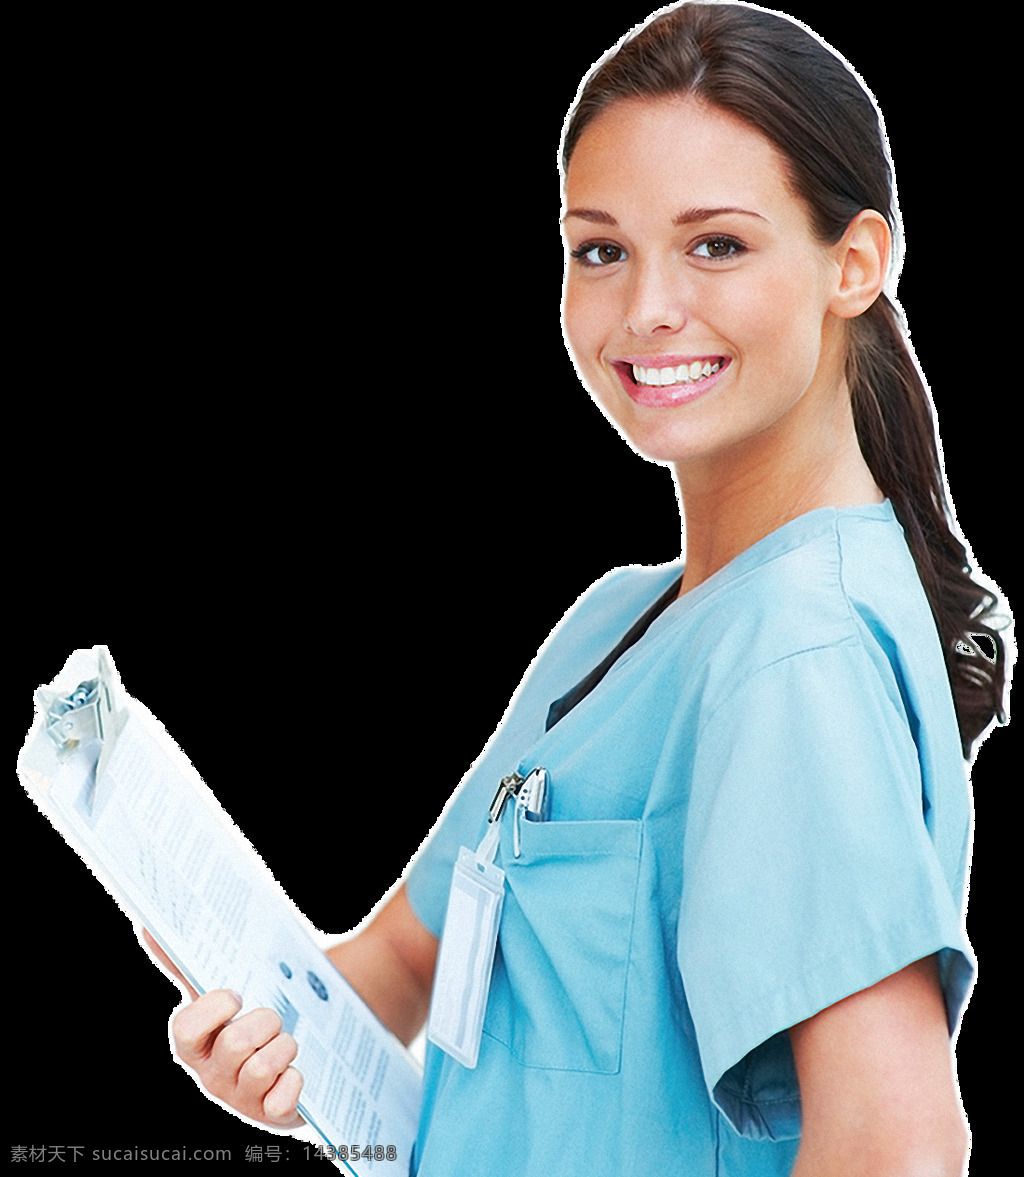 蓝色 衣服 美女 护士 免 抠 透明 图 层 医院护士图片 卡通 大全 护士图片素材 中国护士 西方护士 医院护士 白衣天使图片 美女护士照片 漂亮护士图片